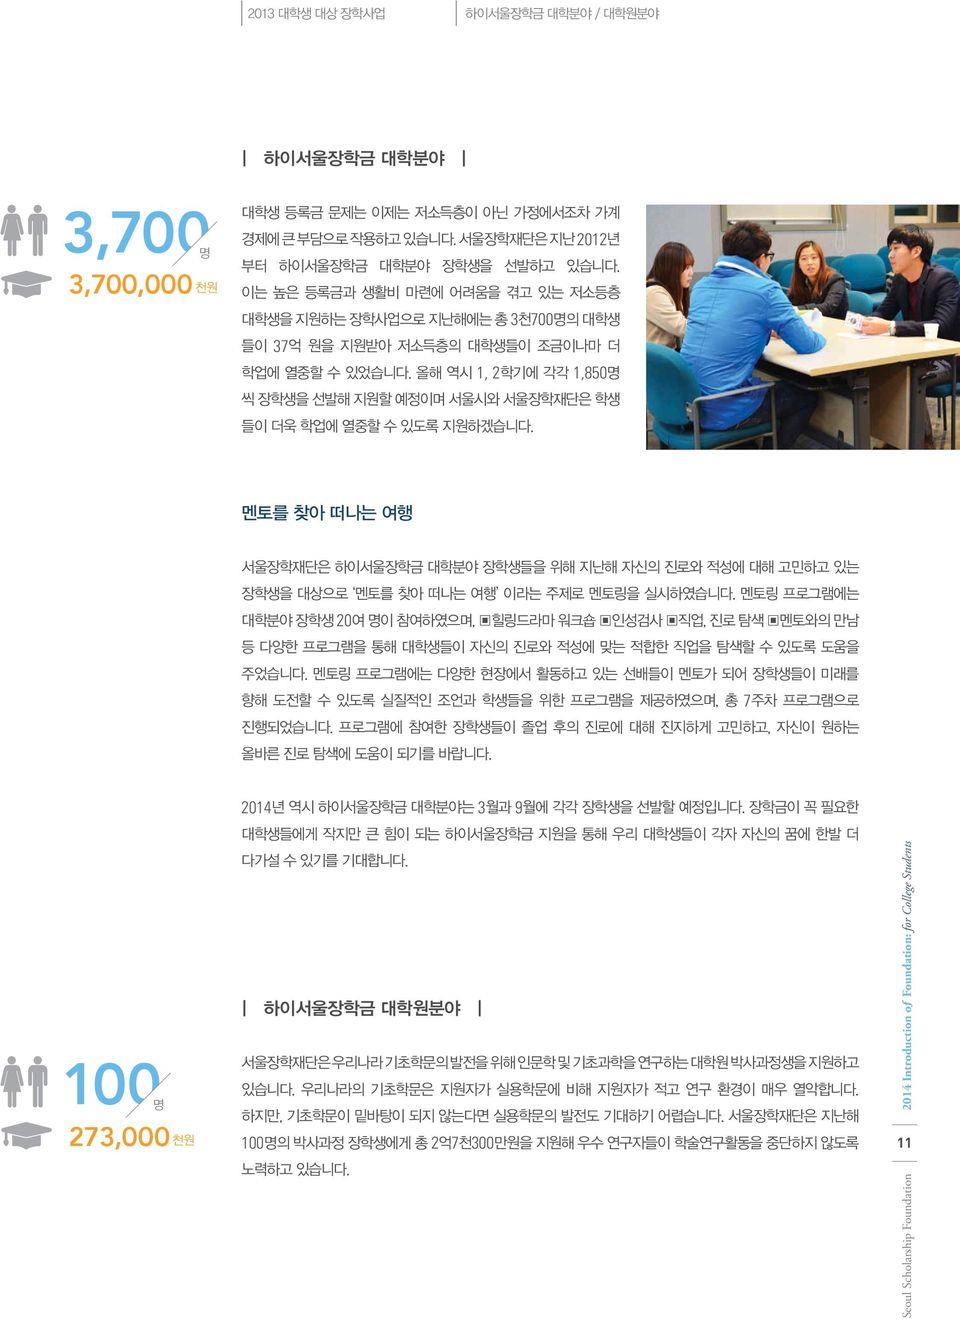 올해 역시 1, 2학기에 각각 1,850명 씩 장학생을 선발해 지원할 예정이며 서울시와 서울장학재단은 학생 들이 더욱 학업에 열중할 수 있도록 지원하겠습니다.